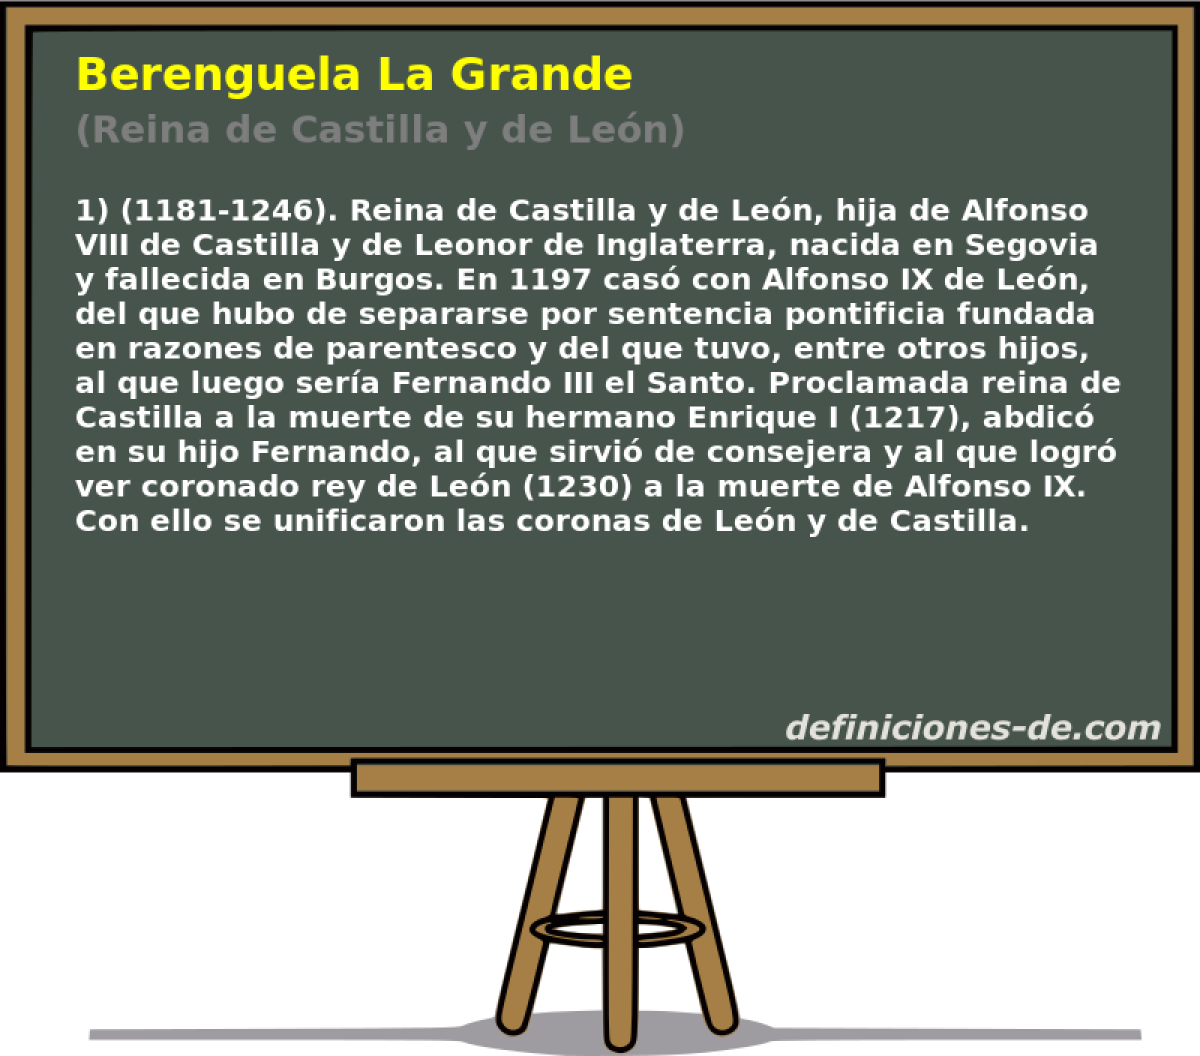 Berenguela La Grande (Reina de Castilla y de Len)